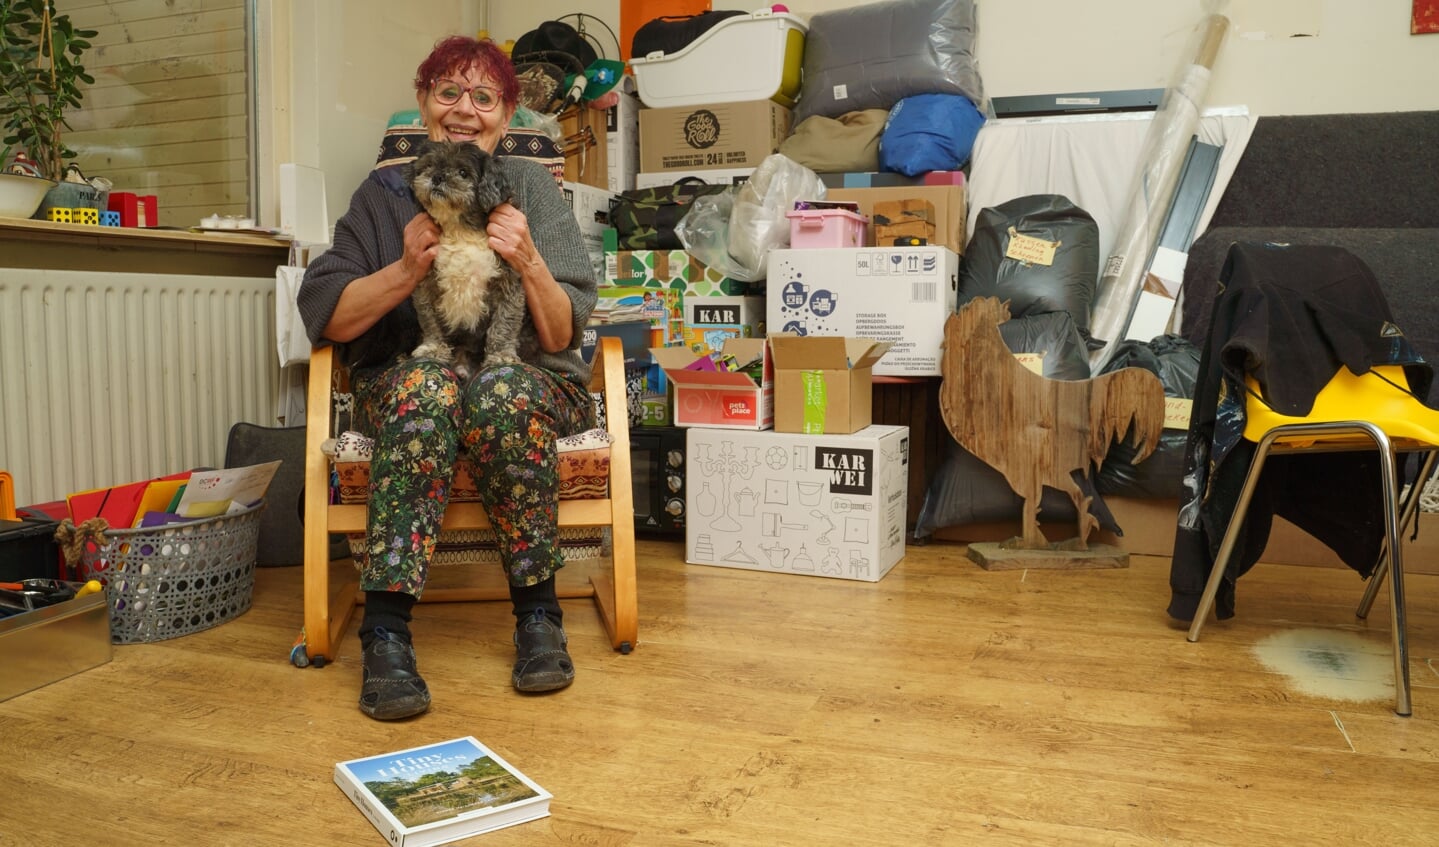 Ivonne met één van haar hondjes, met op de achtergrond de ingepakte spullen die ze meeneemt naar haar tiny house.